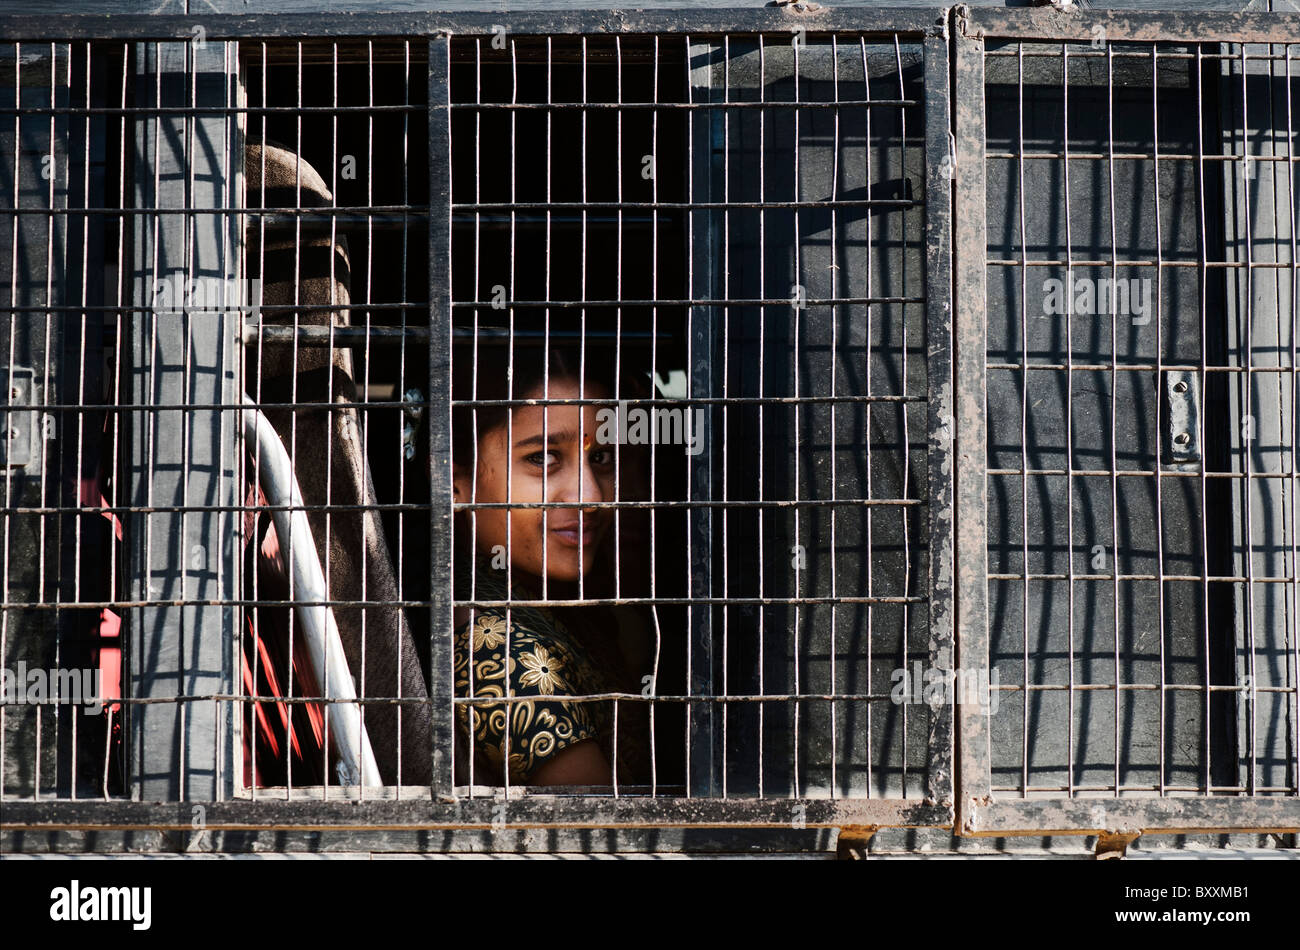 Indian ragazza adolescente in una scuola bus dietro una finestra a maglie di filo. Andhra Pradesh, India Foto Stock